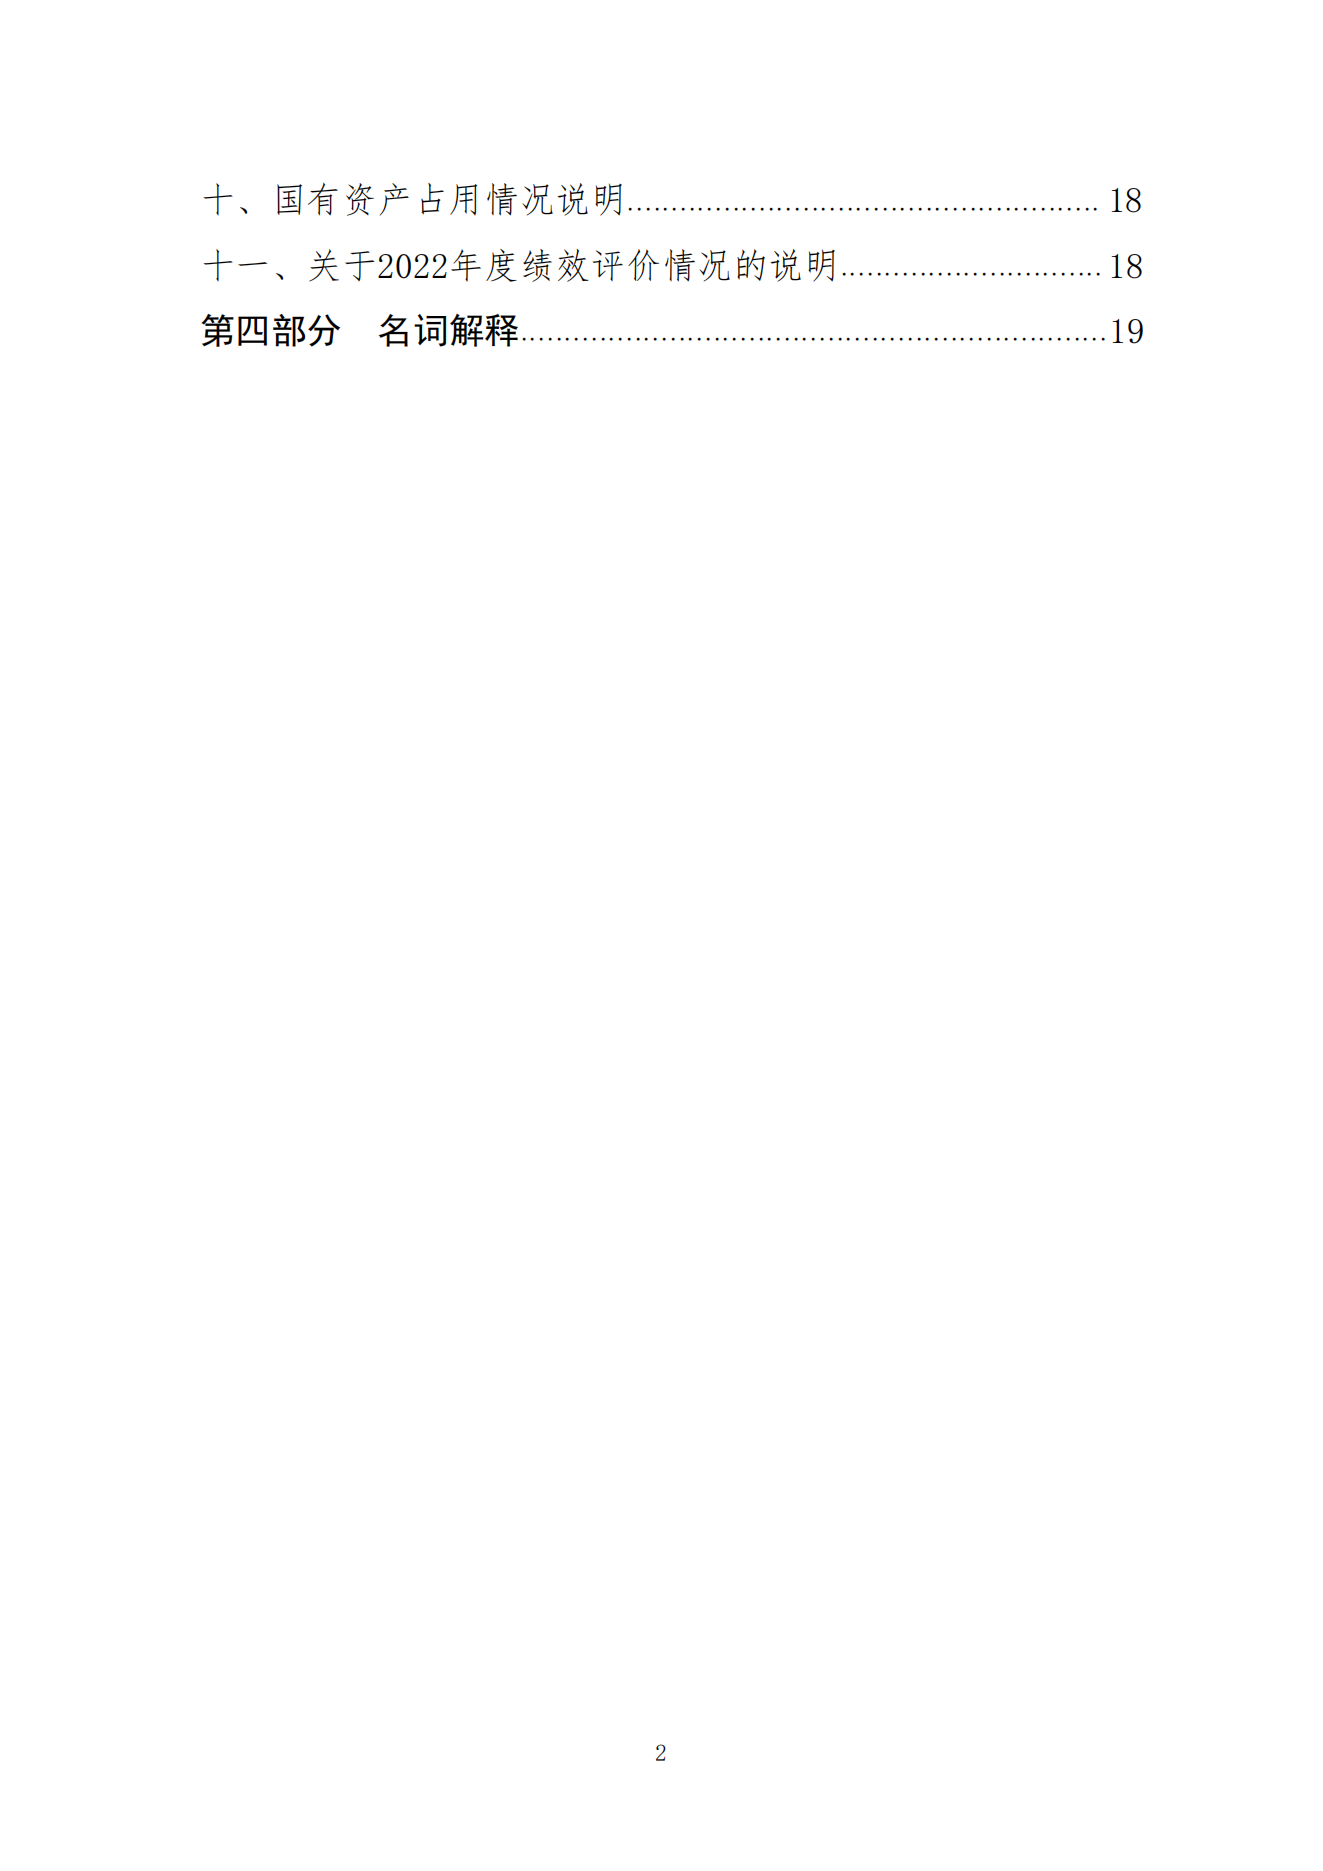 2023年8月7日 中国财政杂志社2022年度决算公开稿(1)_02.png